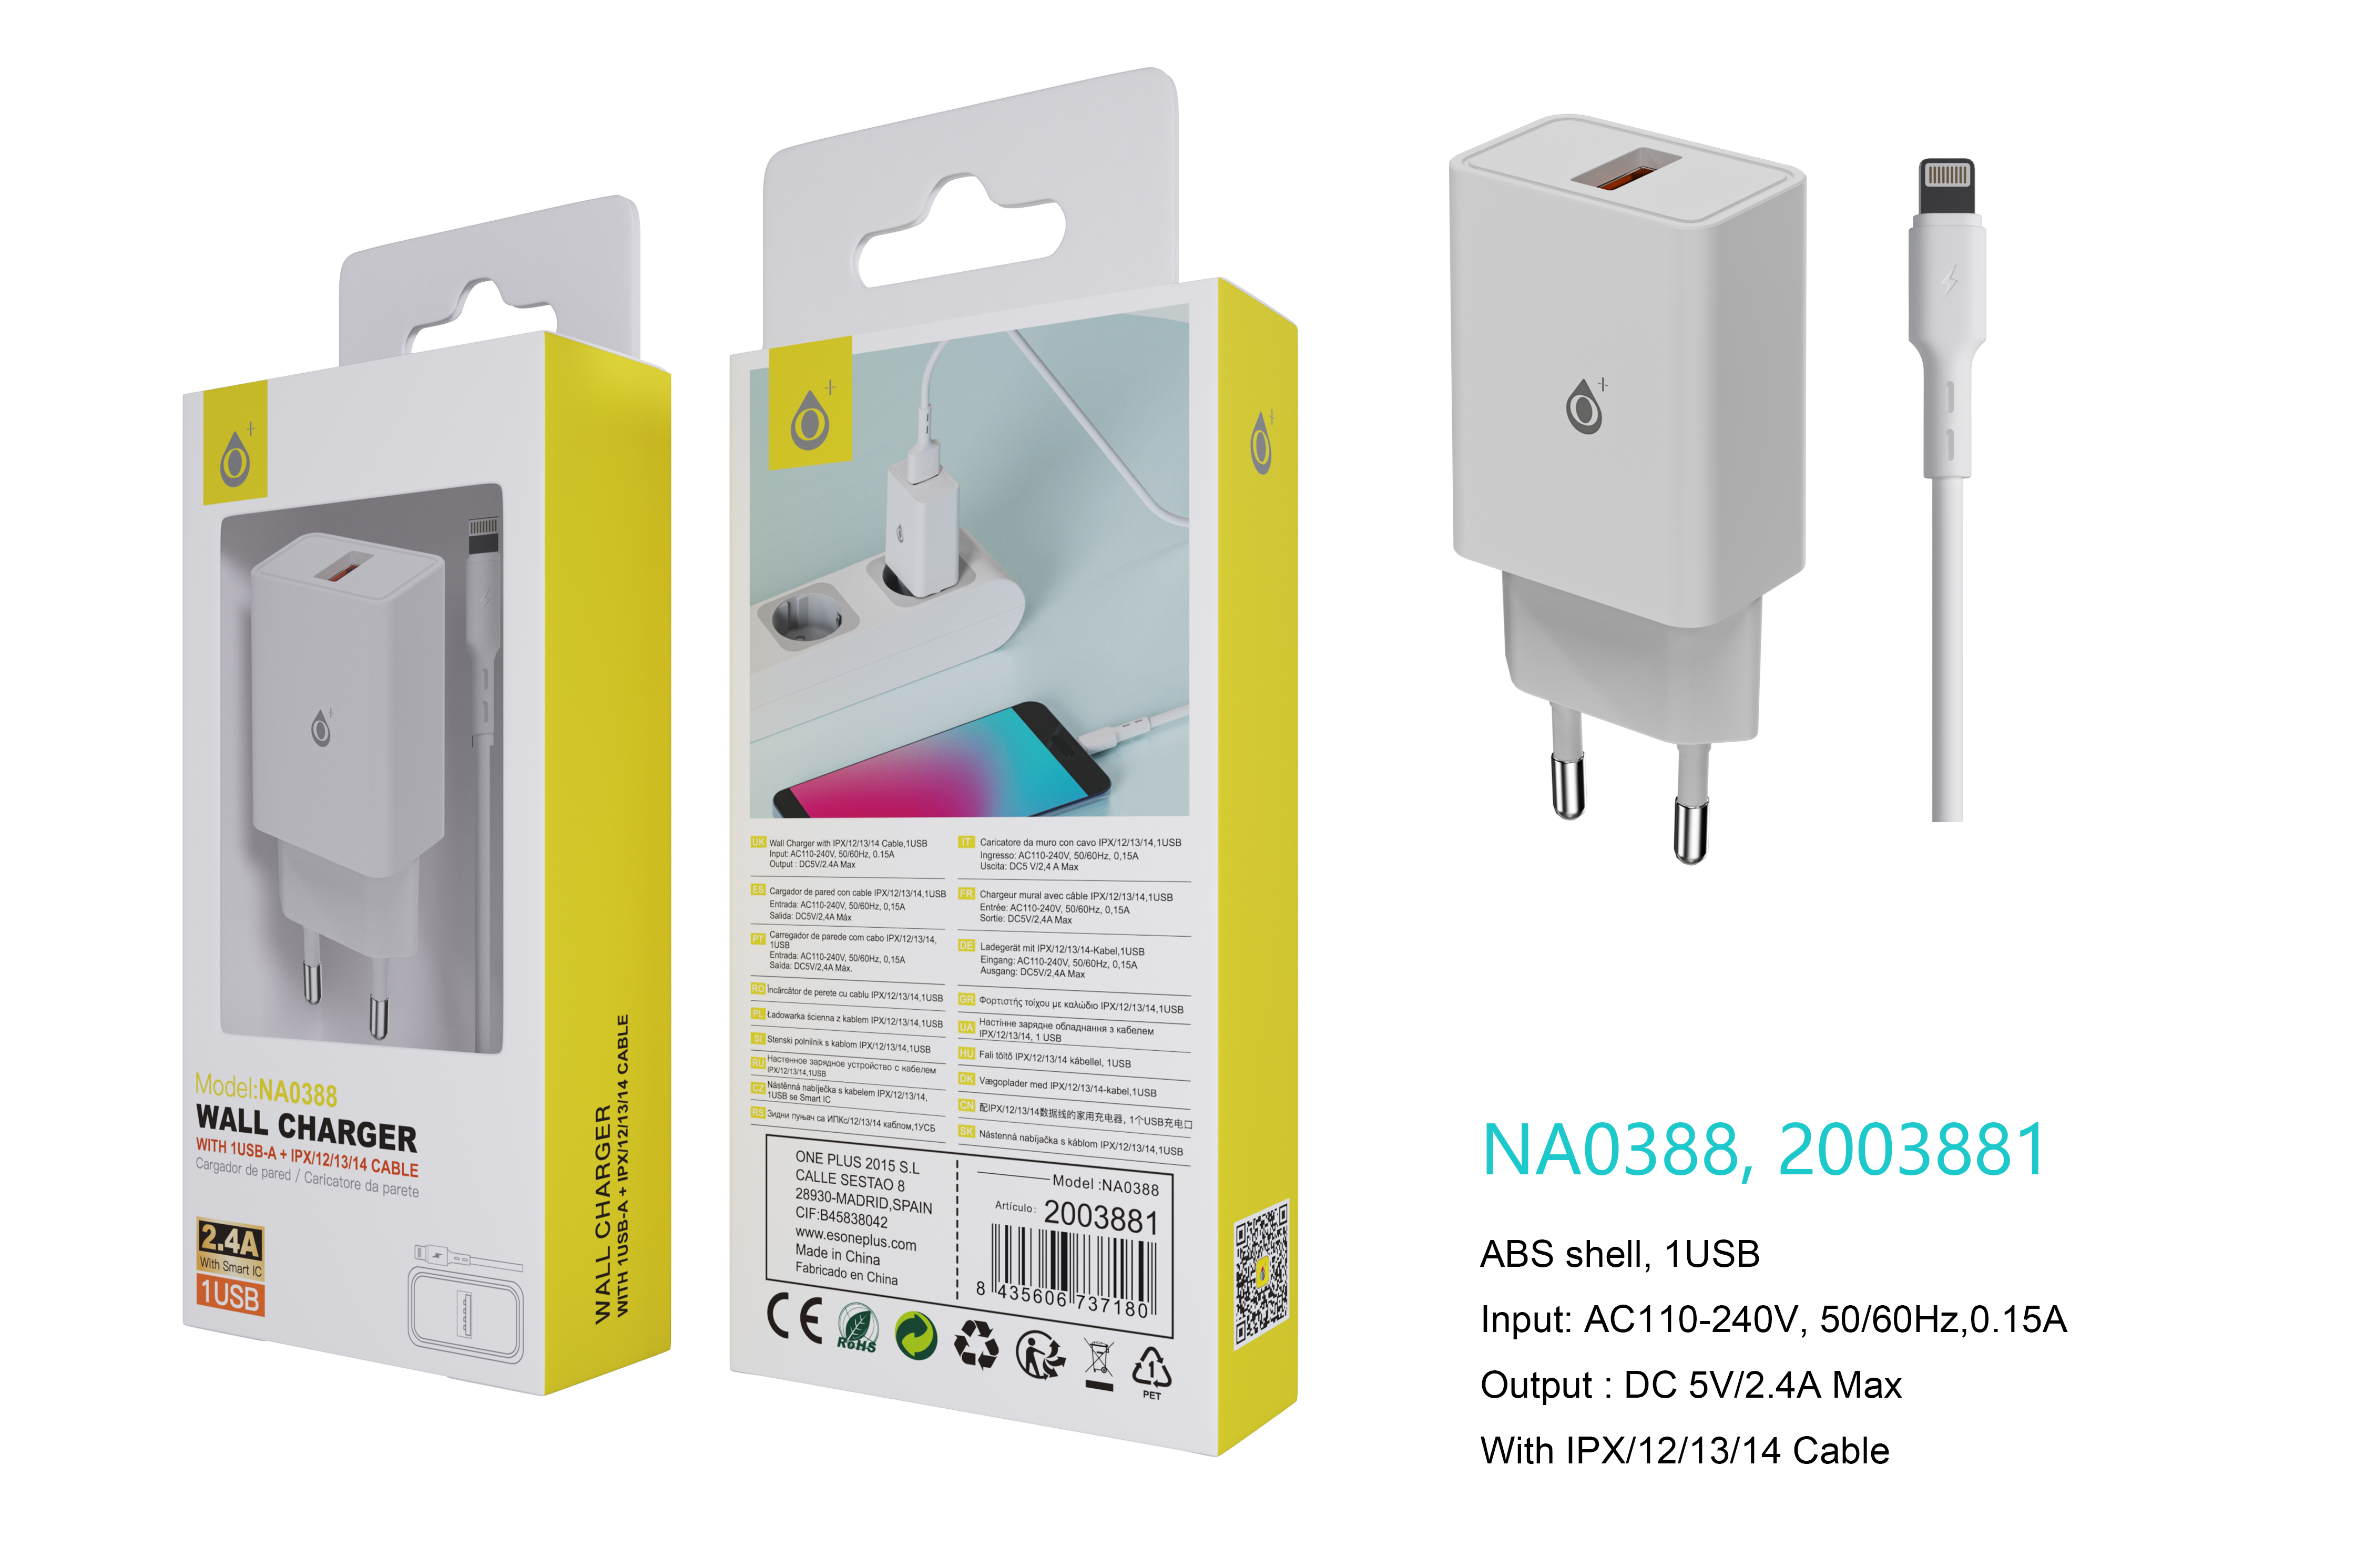 NA0388 BL Cargador de Red KAI 1 USB Con Smart Chip, Con Cable Iphone 5-14, 2.4A, Blanco